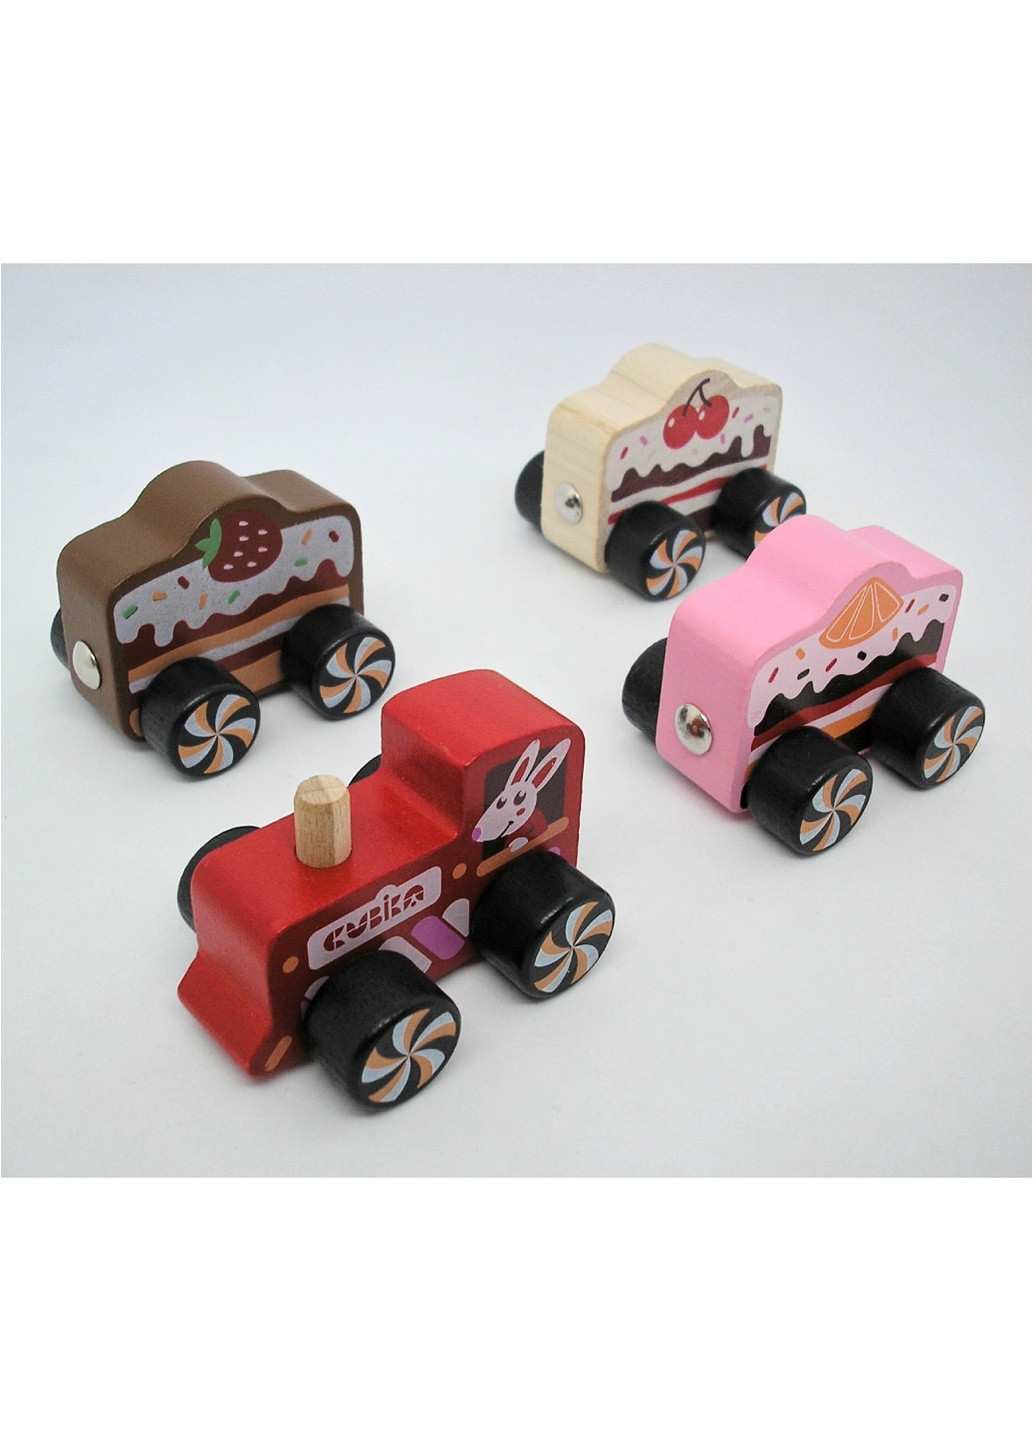 Игрушка деревянная детская разноцветная развивающая поезд на магнитах 4 детали поезд "Cakes" Cubika (259771279)